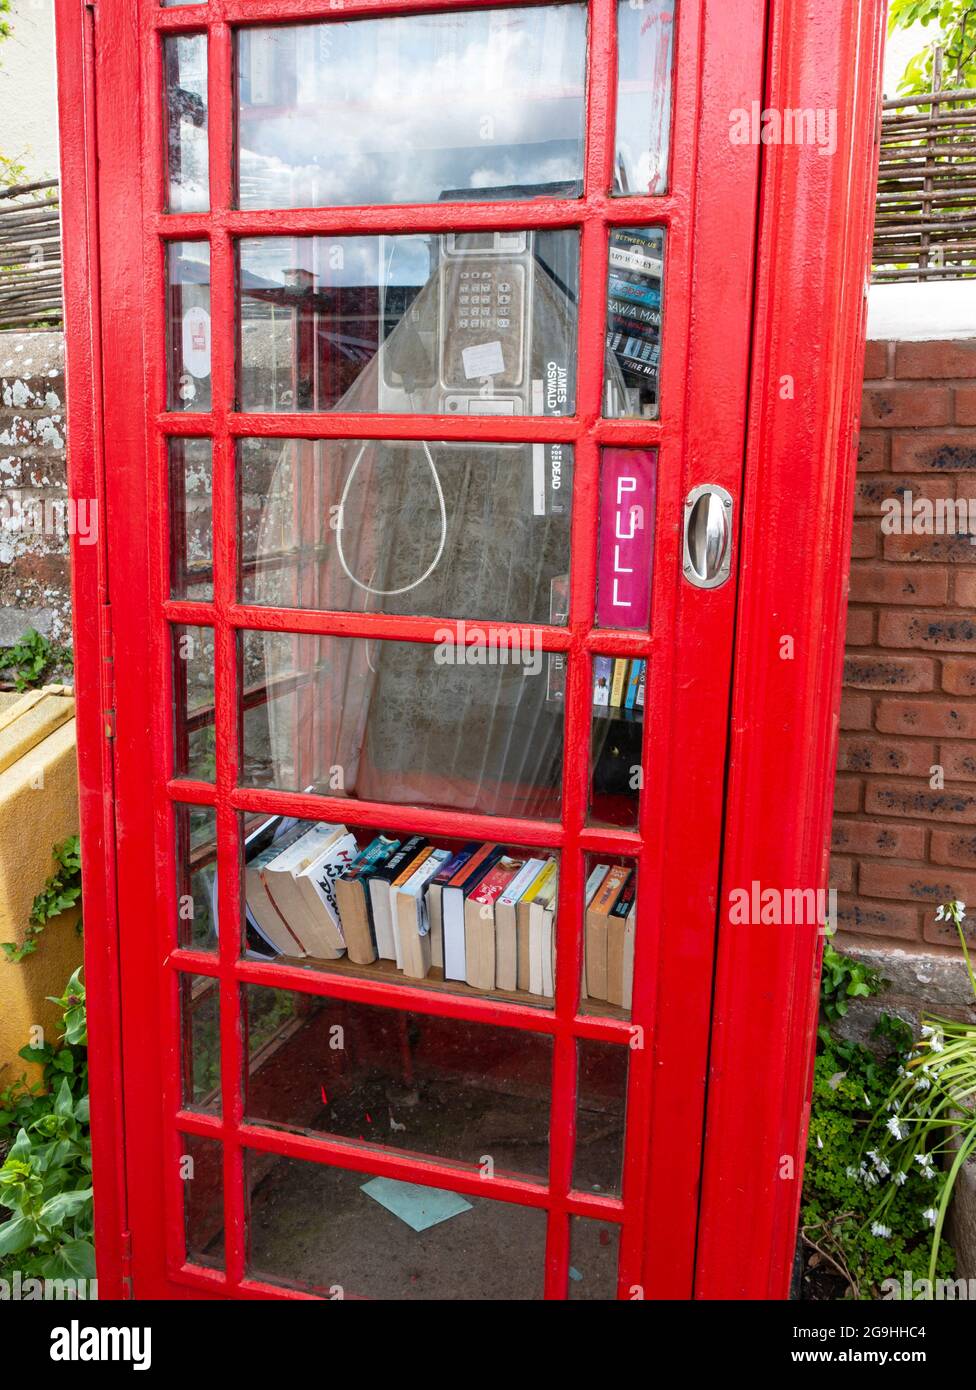 Bibliothek der roten Telefonbox, Topsham, Devon, England, Großbritannien. Stockfoto